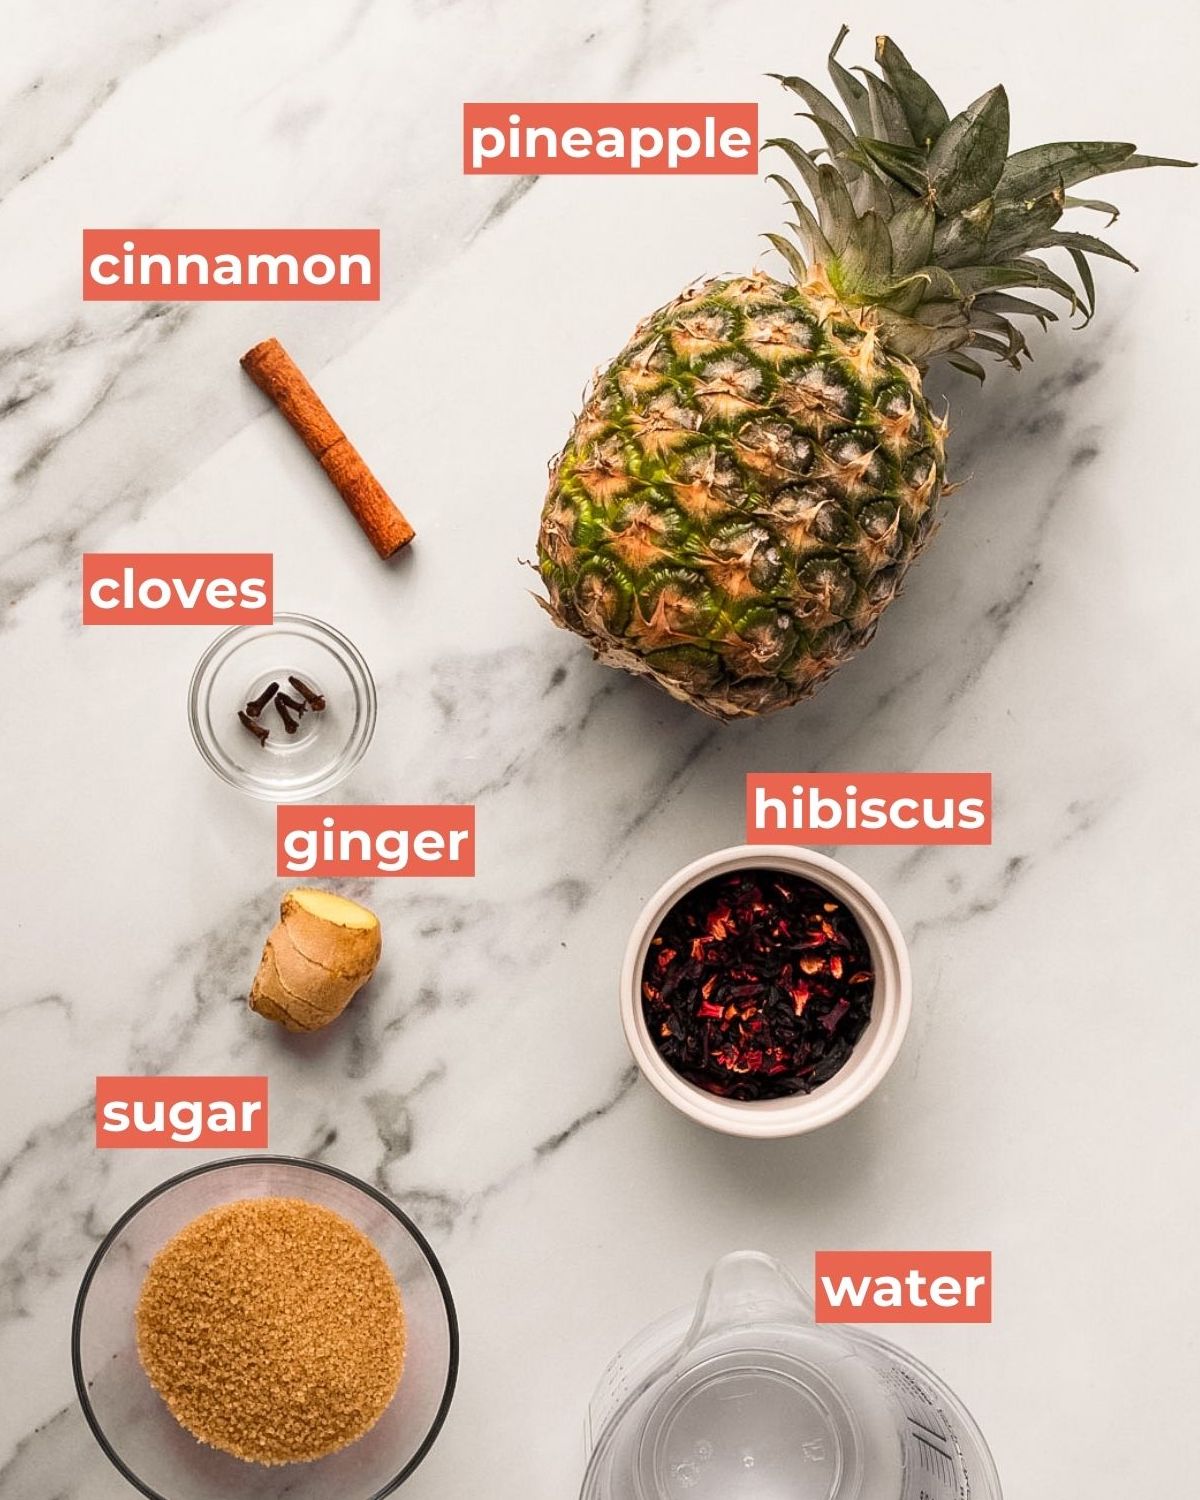 pineapple skin tea ingredients labeled